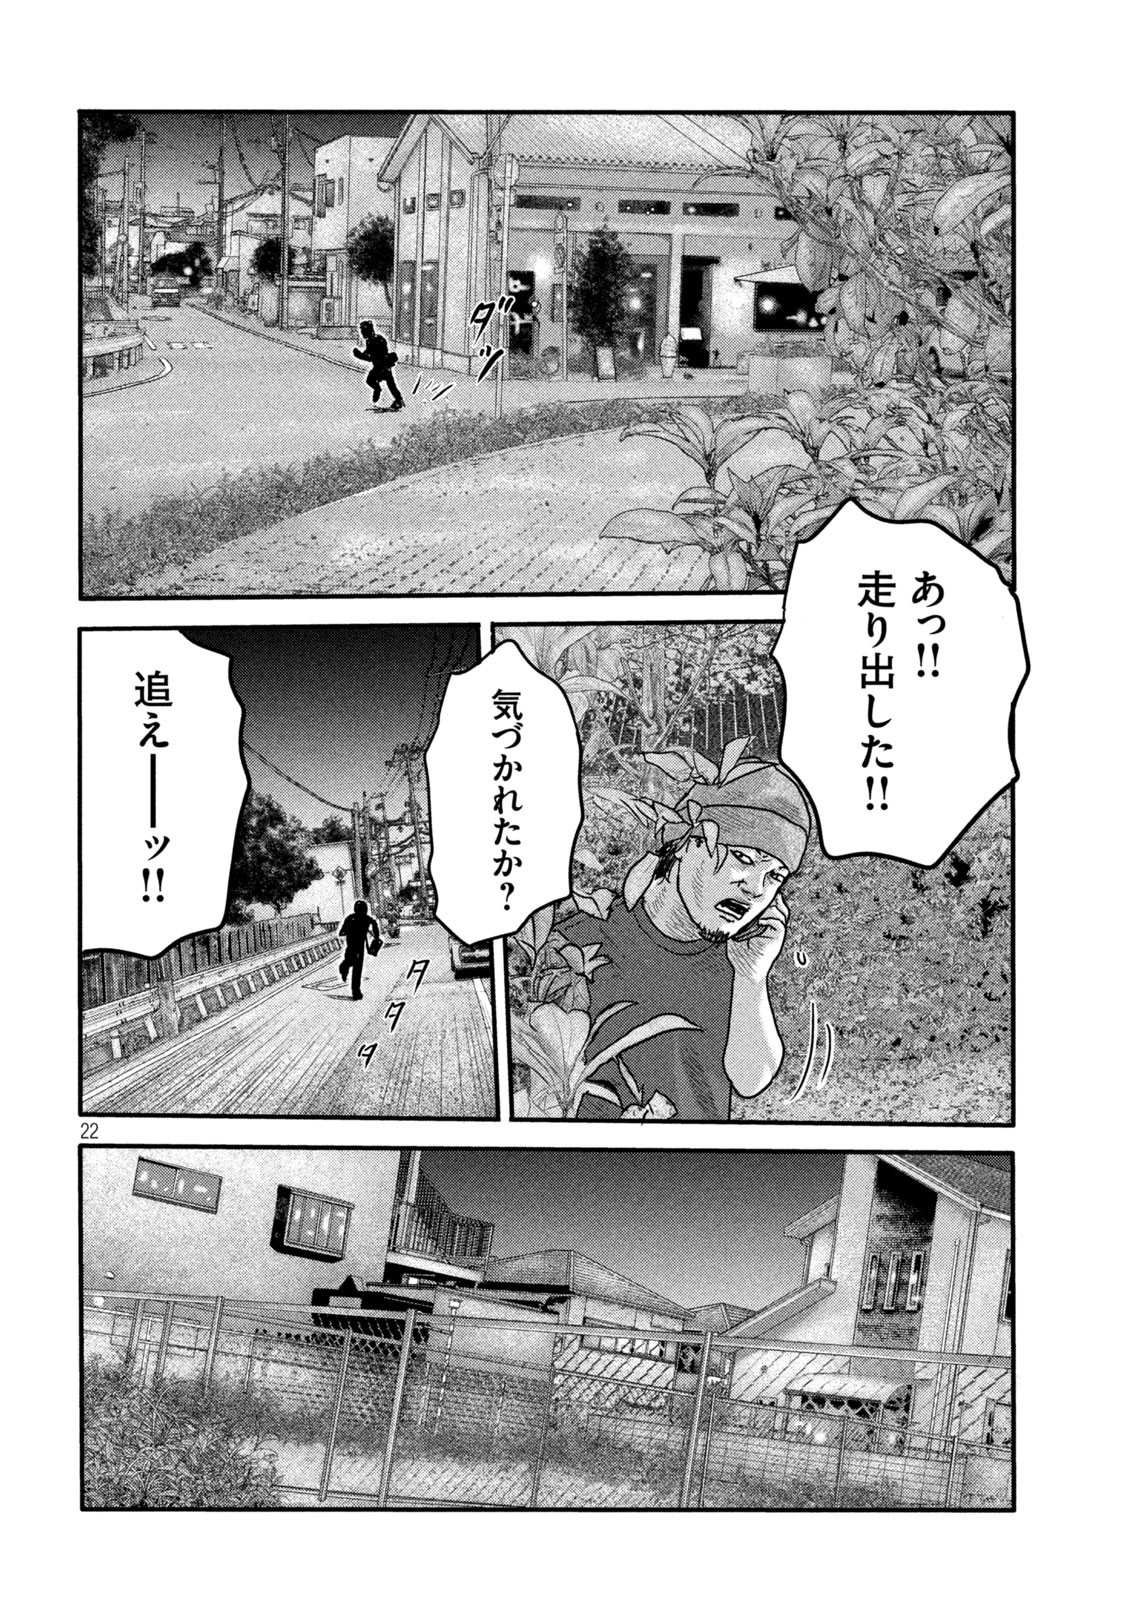 ザ・ファブル The Second Contact 第2話 - Page 22